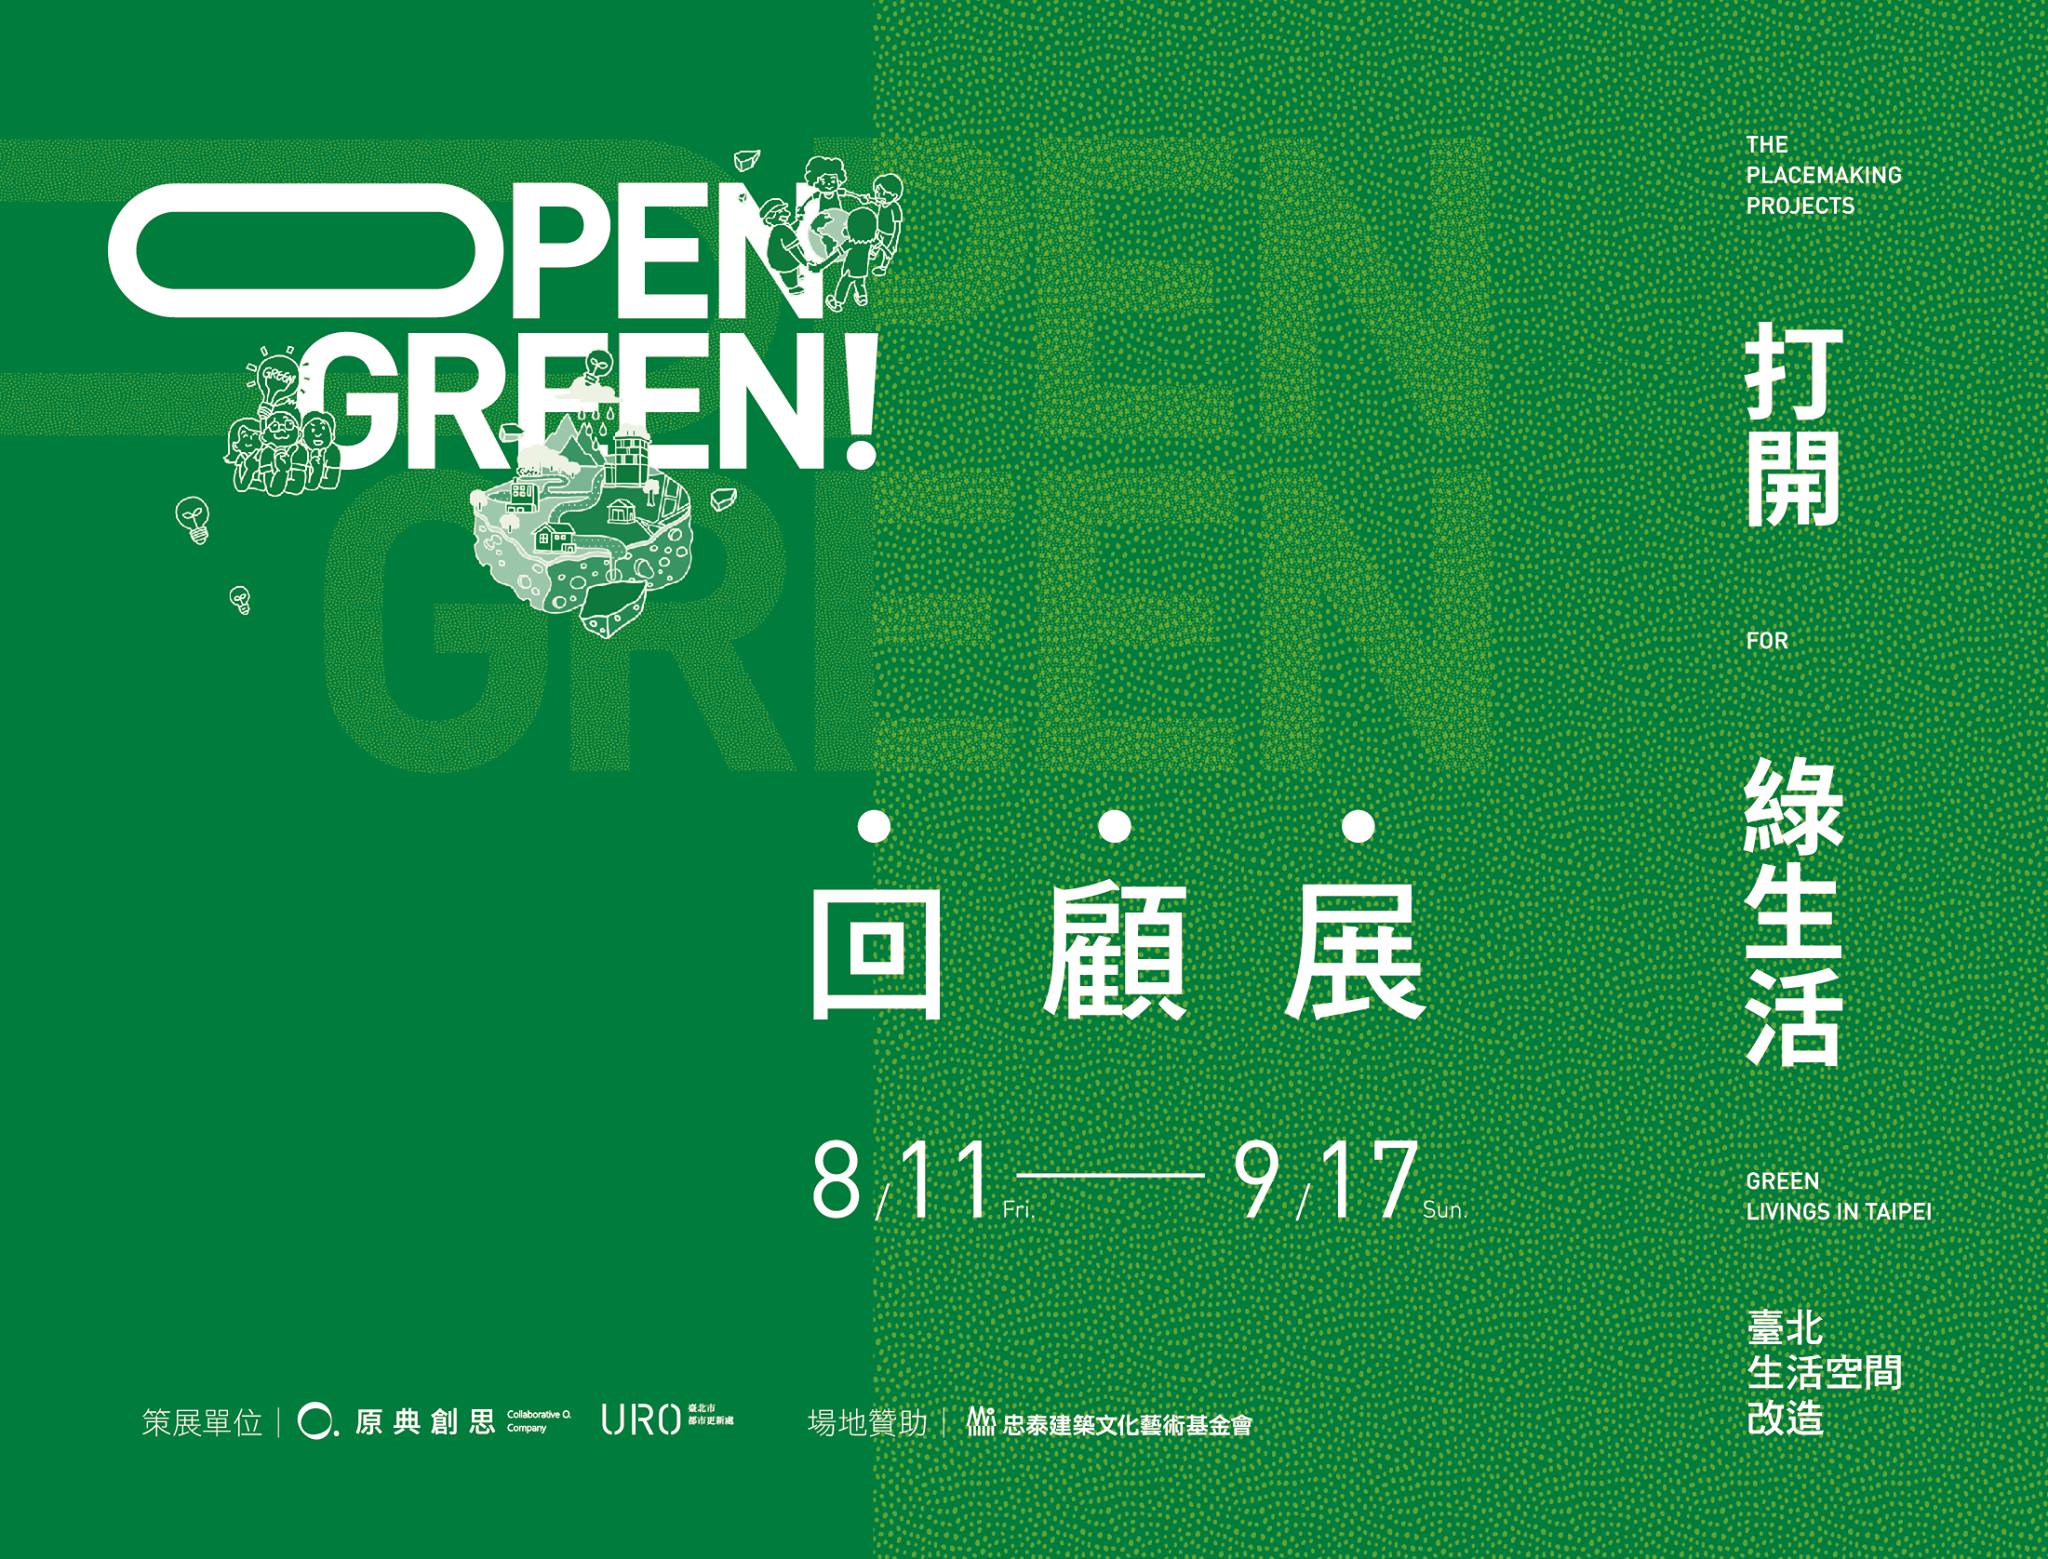 【新富友展】Open Green打開綠生活 回顧展